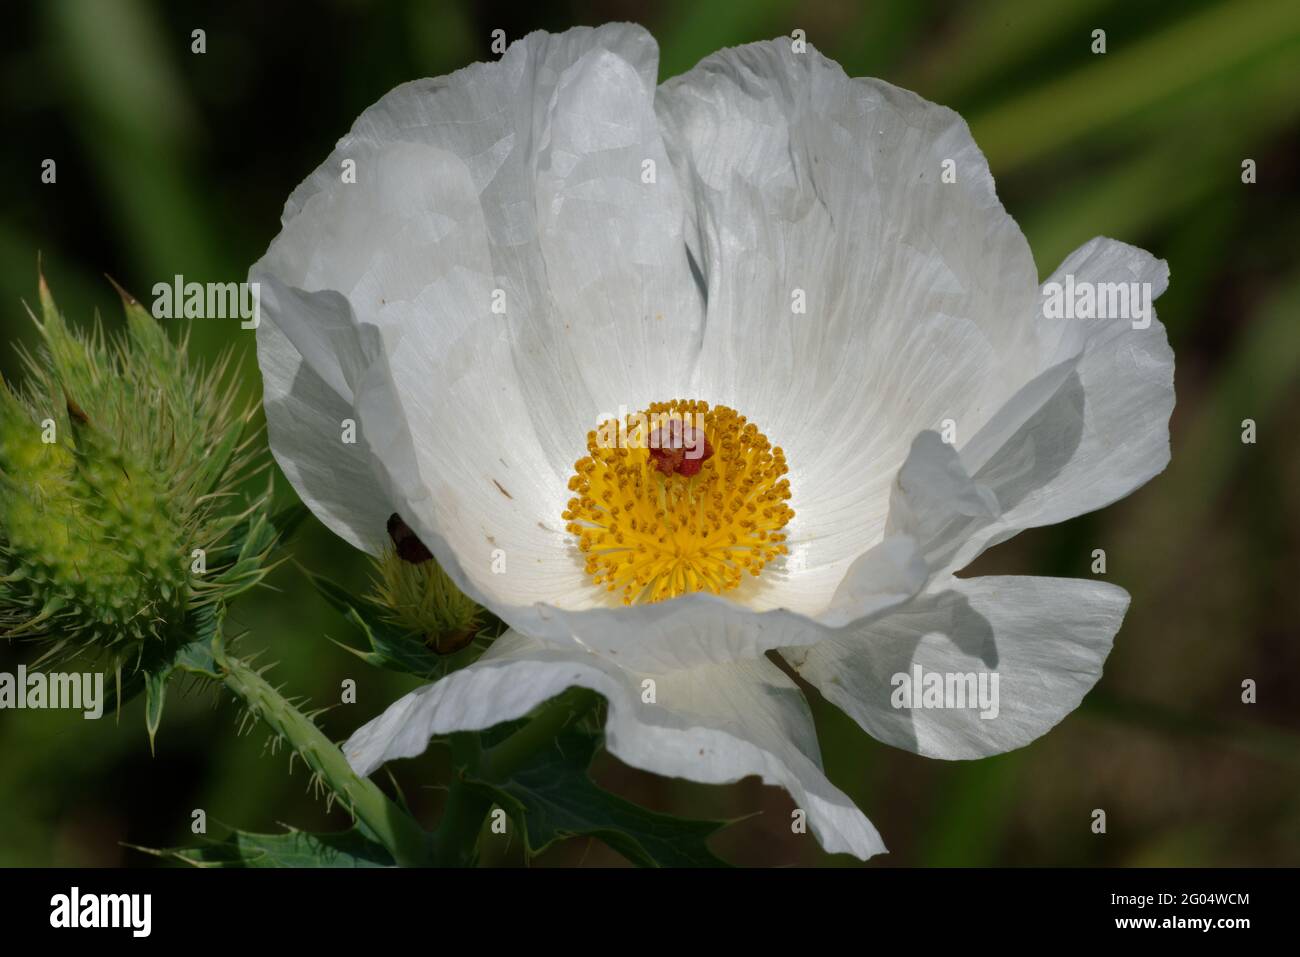 Prickly Poppy flower Stock Photo